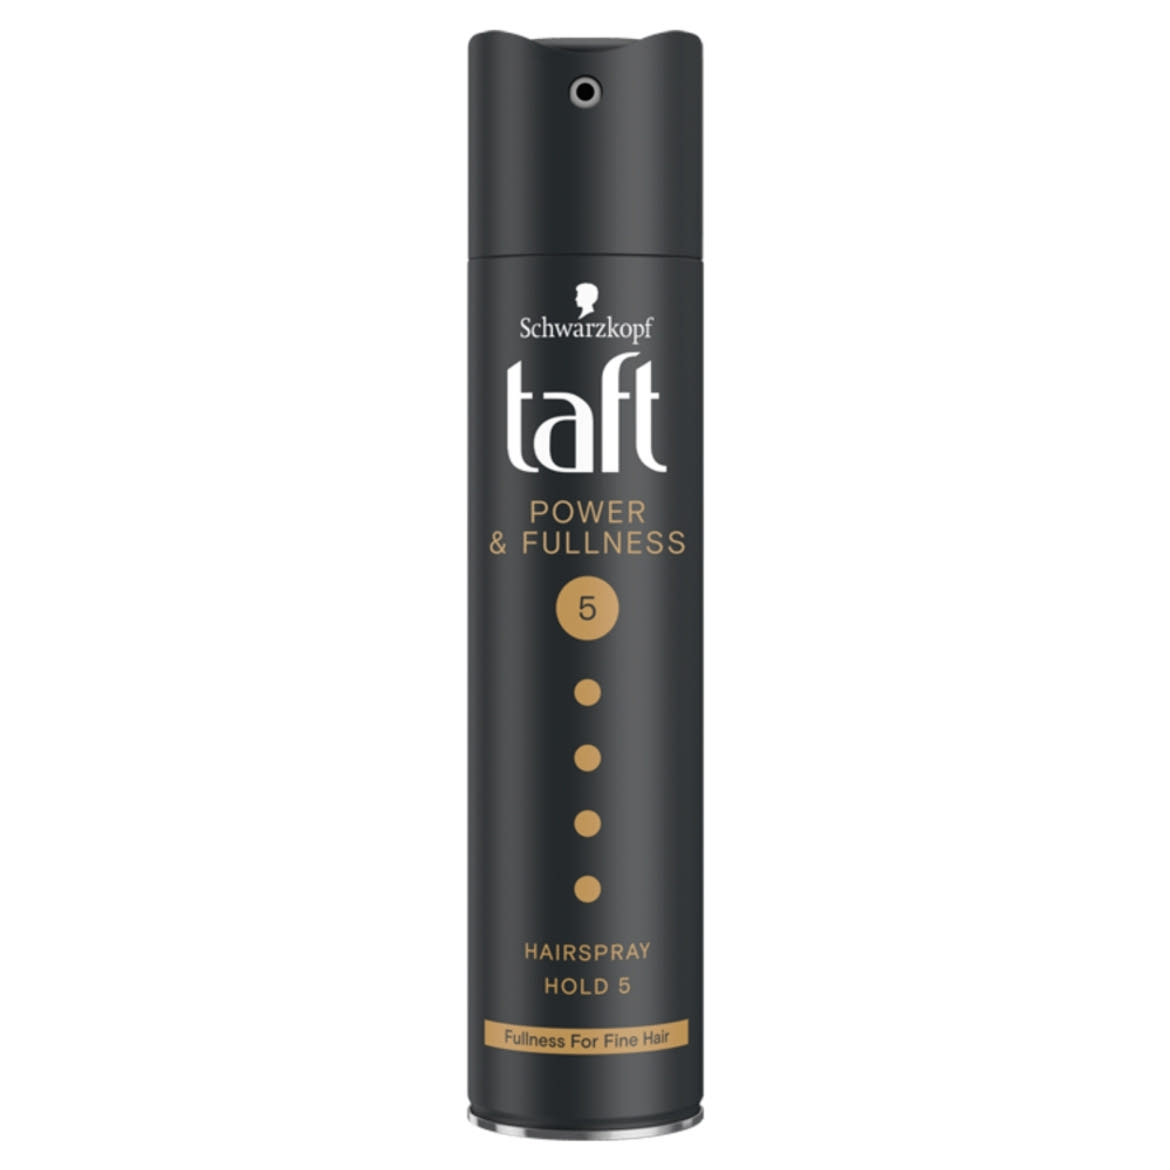 Taft Power & Fullness - mega erős hajlakk